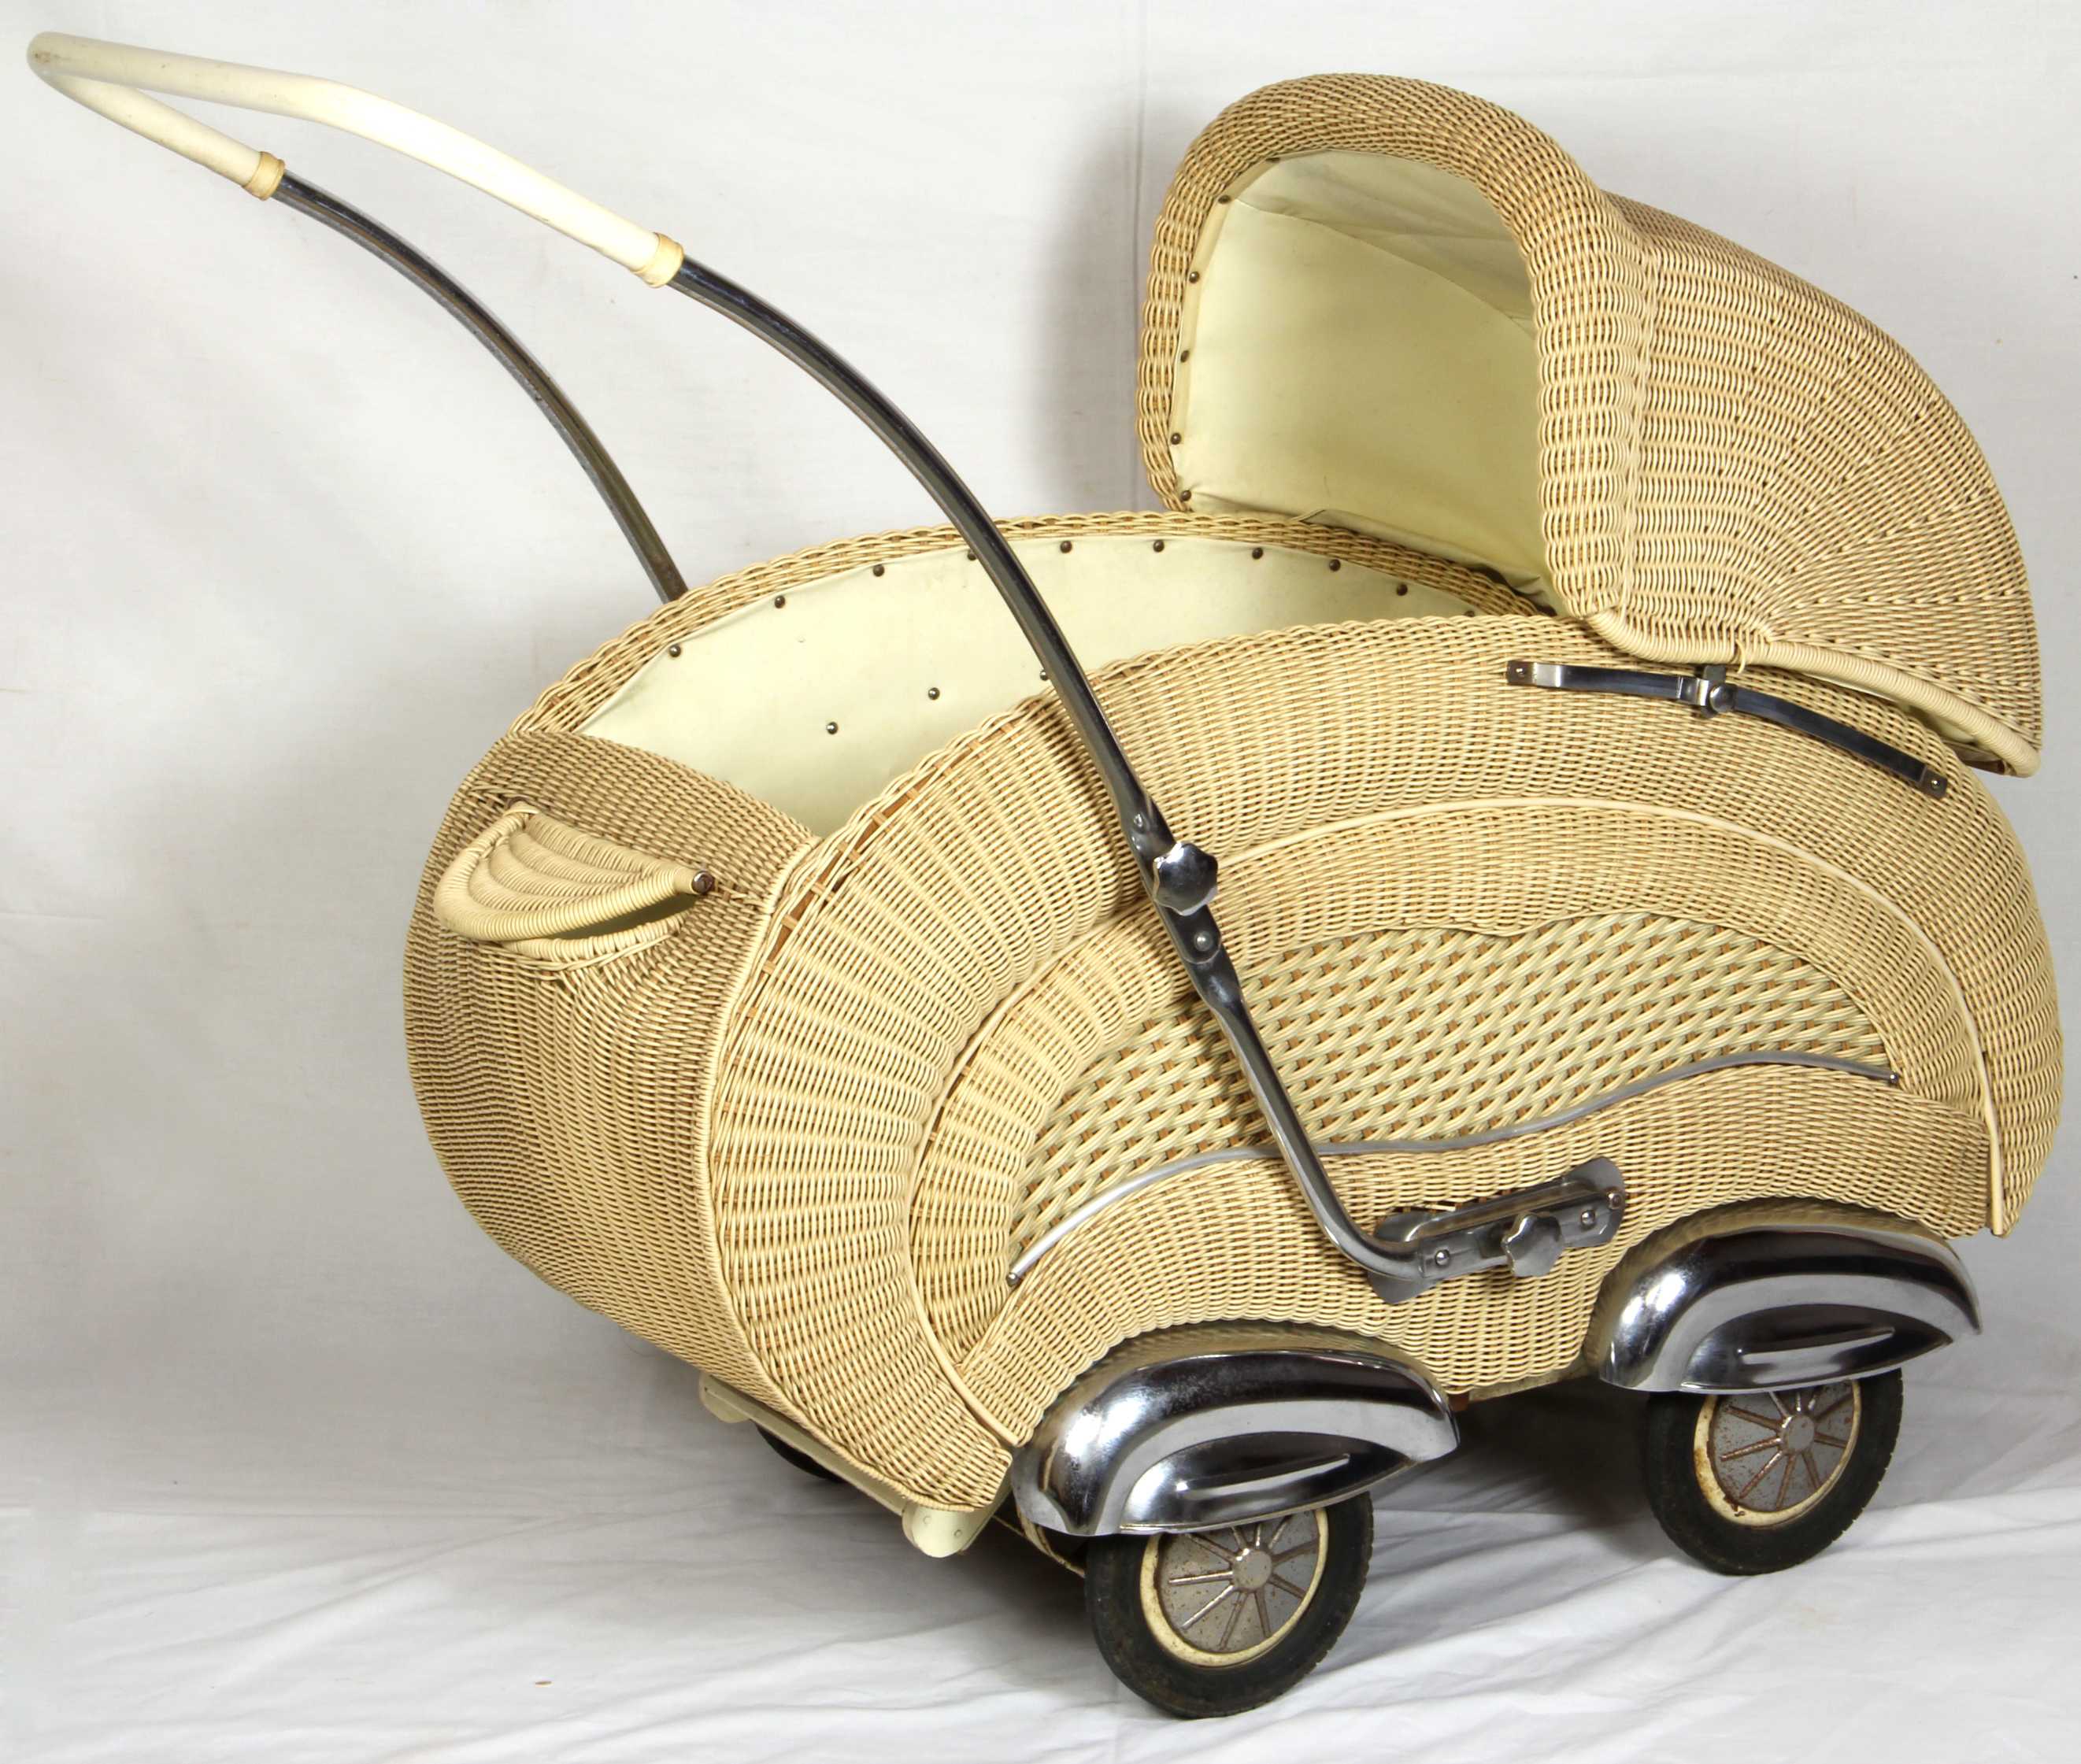 1950s baby stroller